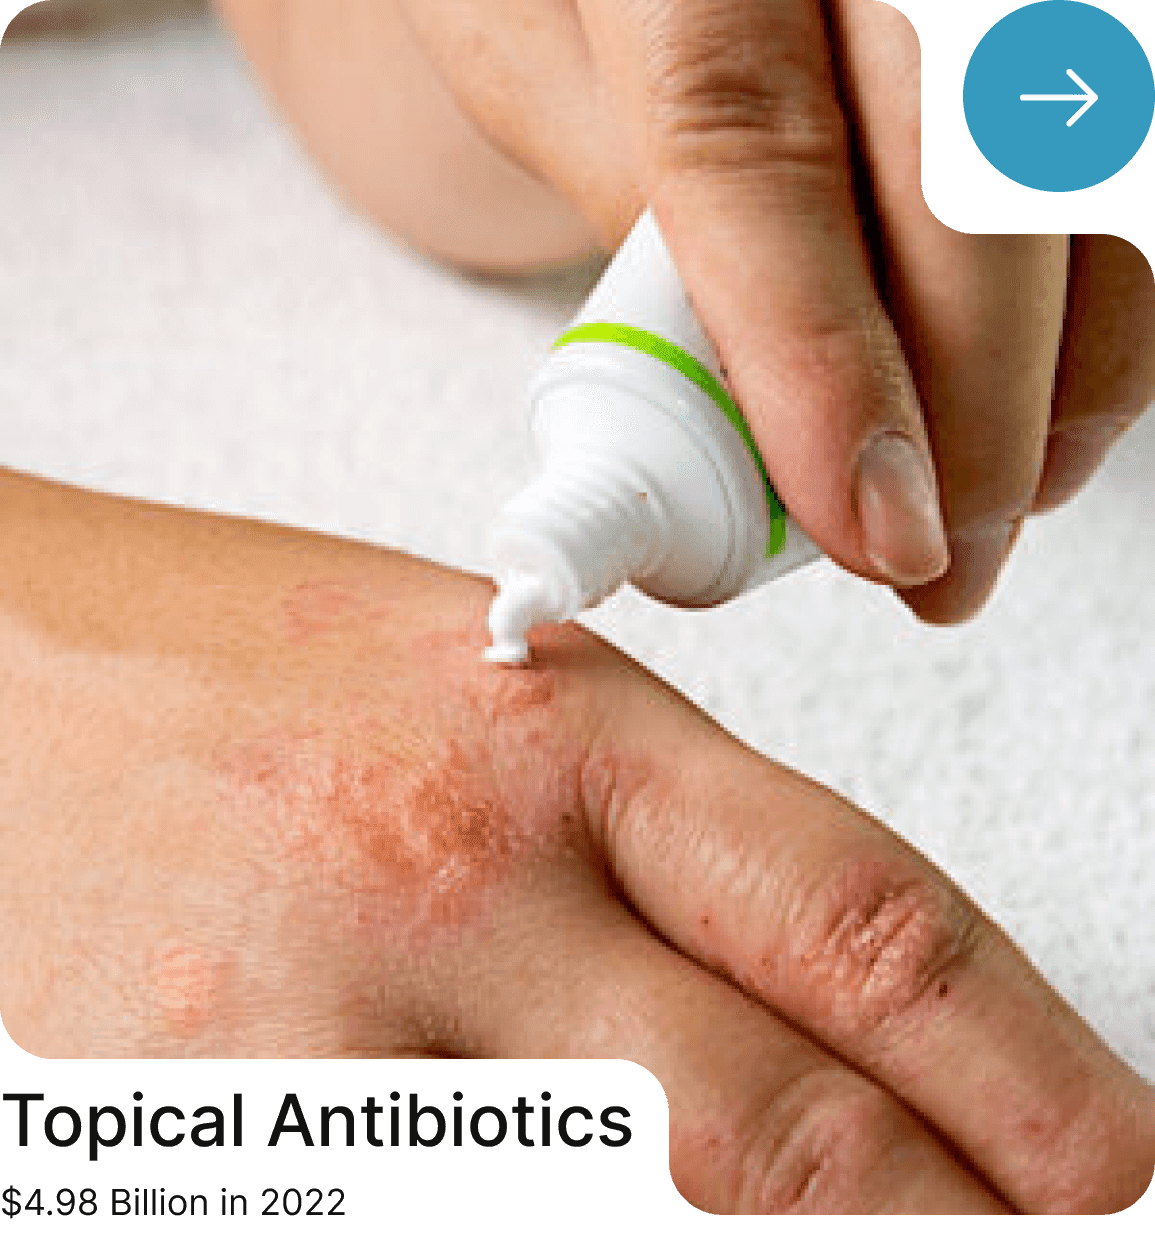 Topical Antibiotics